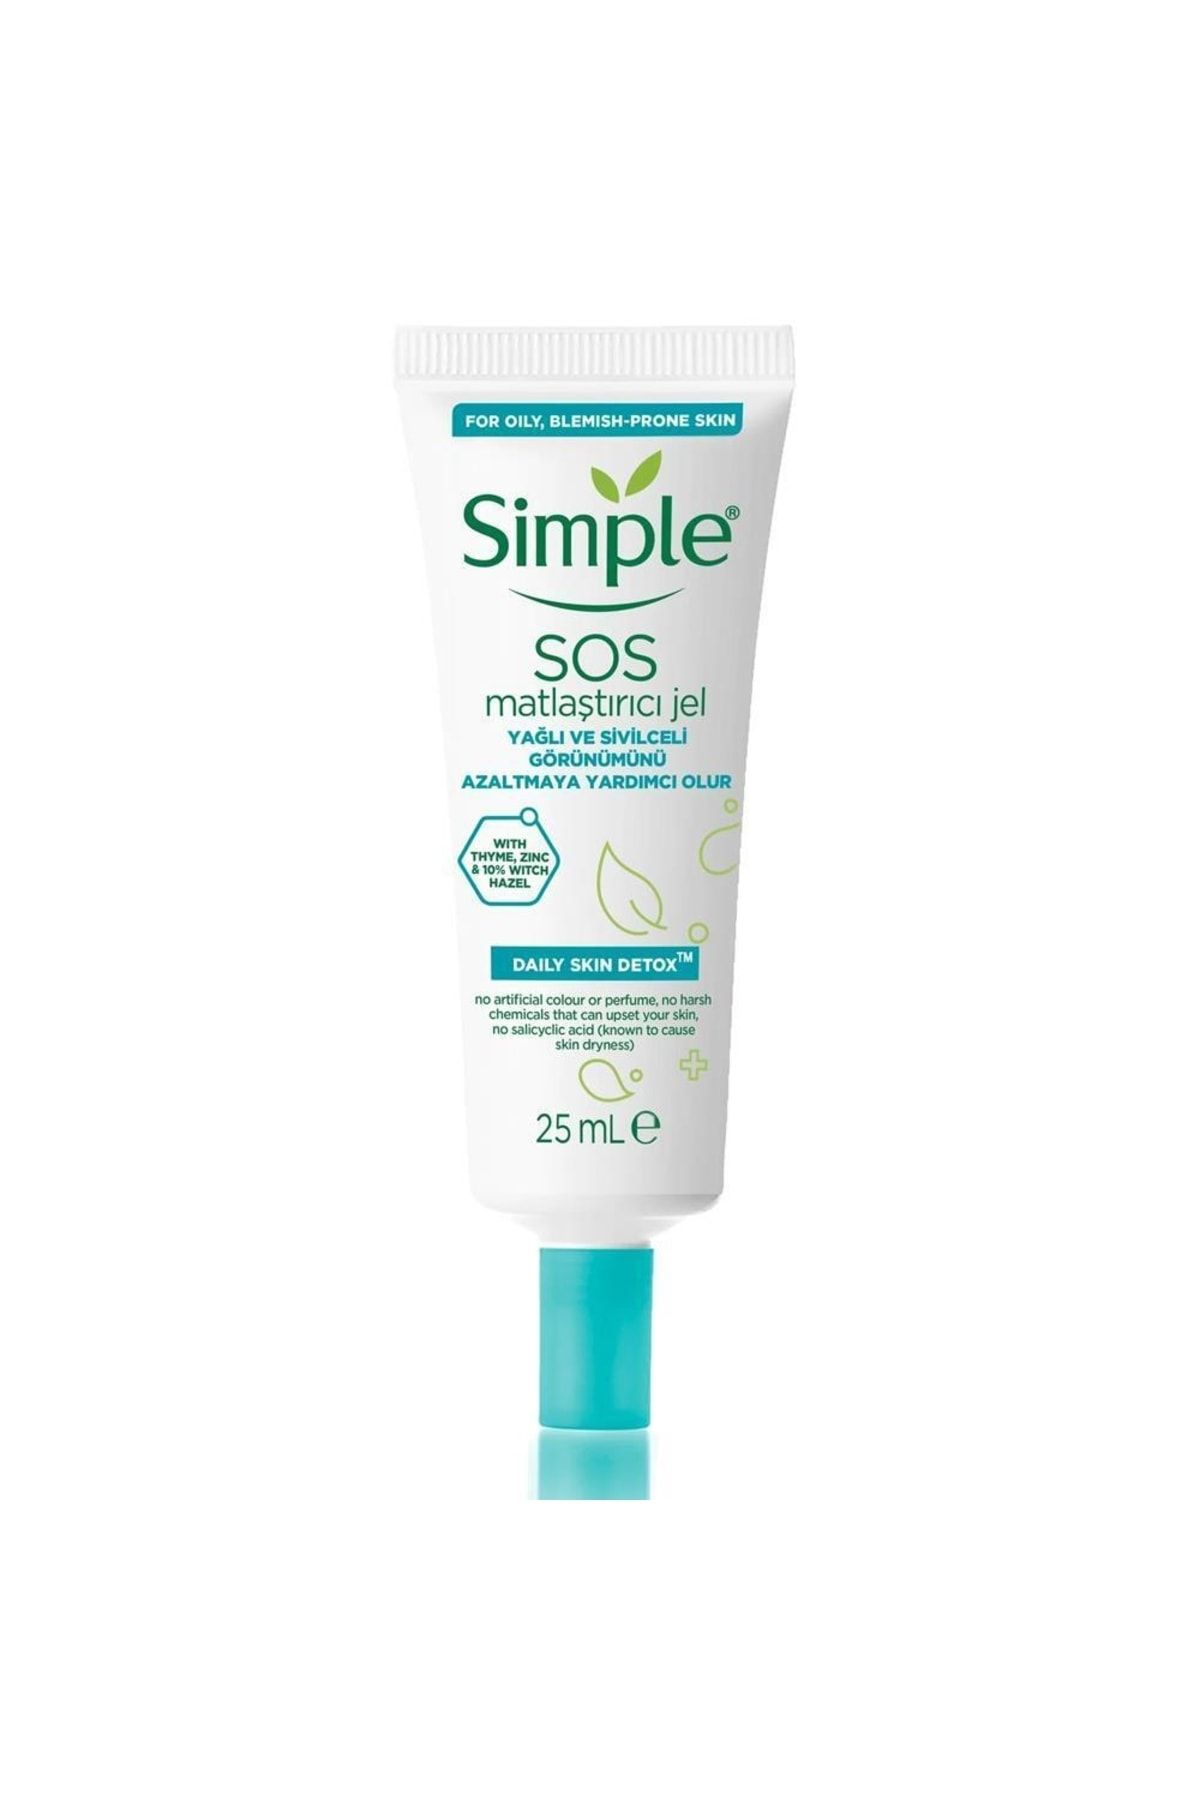 Simple Daily Skin Detox Sos Matlaştırıcı Jel Yağlı Ve Sivilceli Görünümü Yok Etmeye Yardımcı 25 Ml